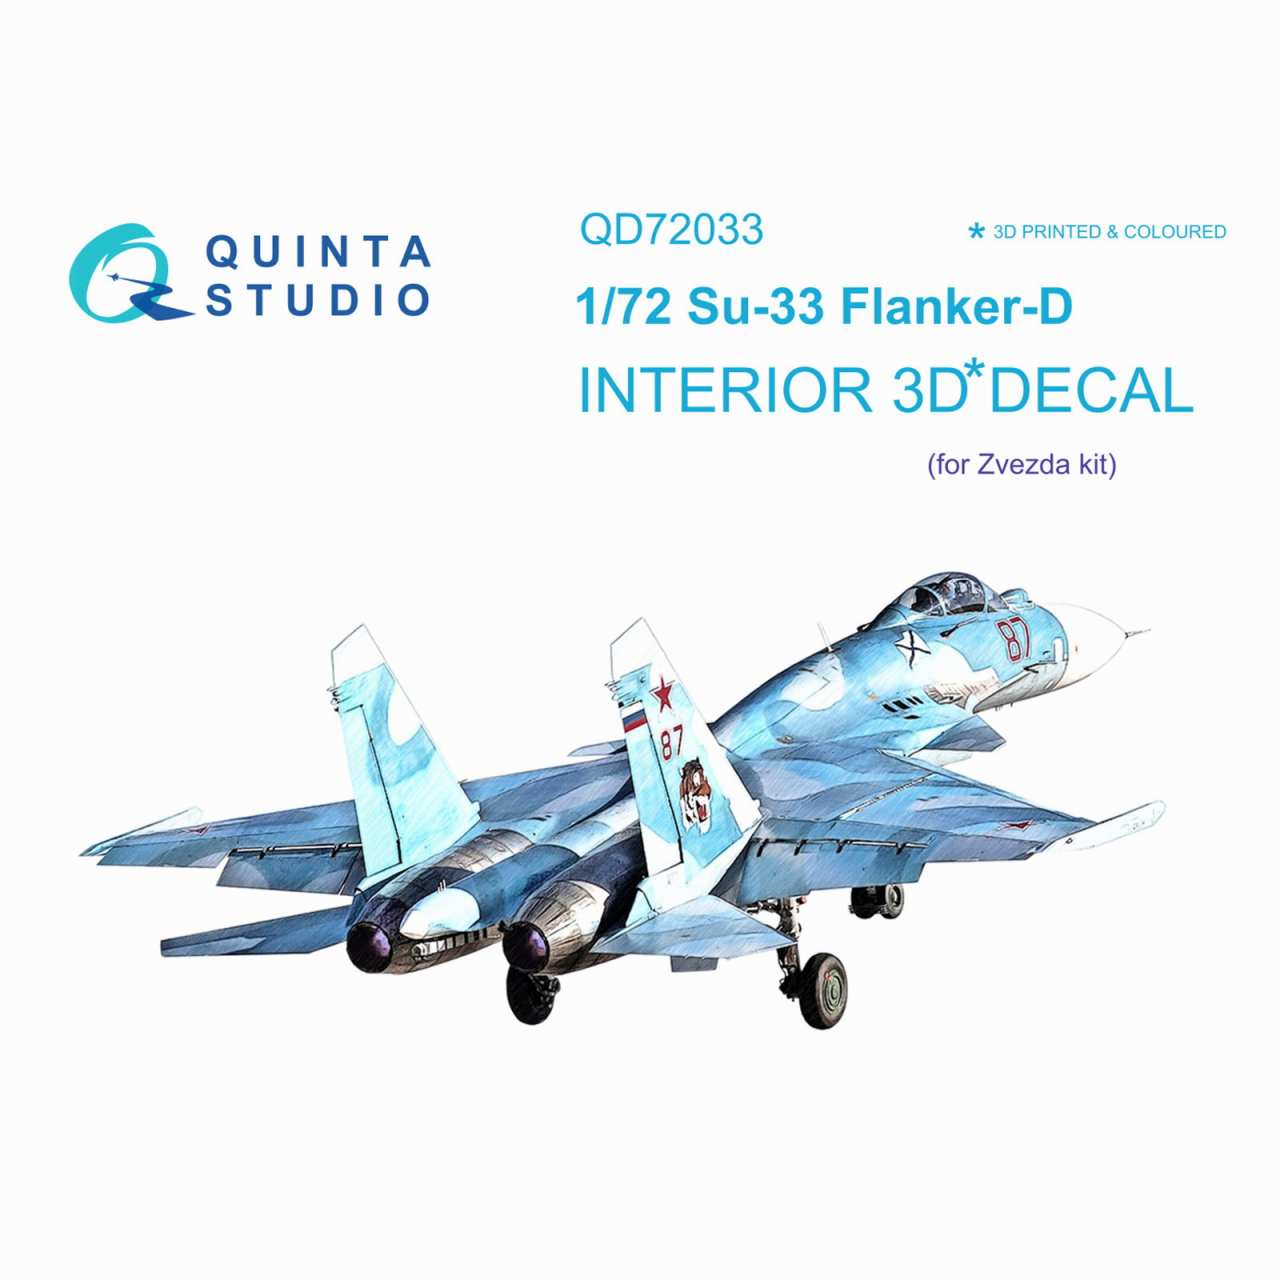 【新製品】QD72033 1/72 スホーイ Su-33 フランカー 内装カラー3Dデカール(ズベズダ用)